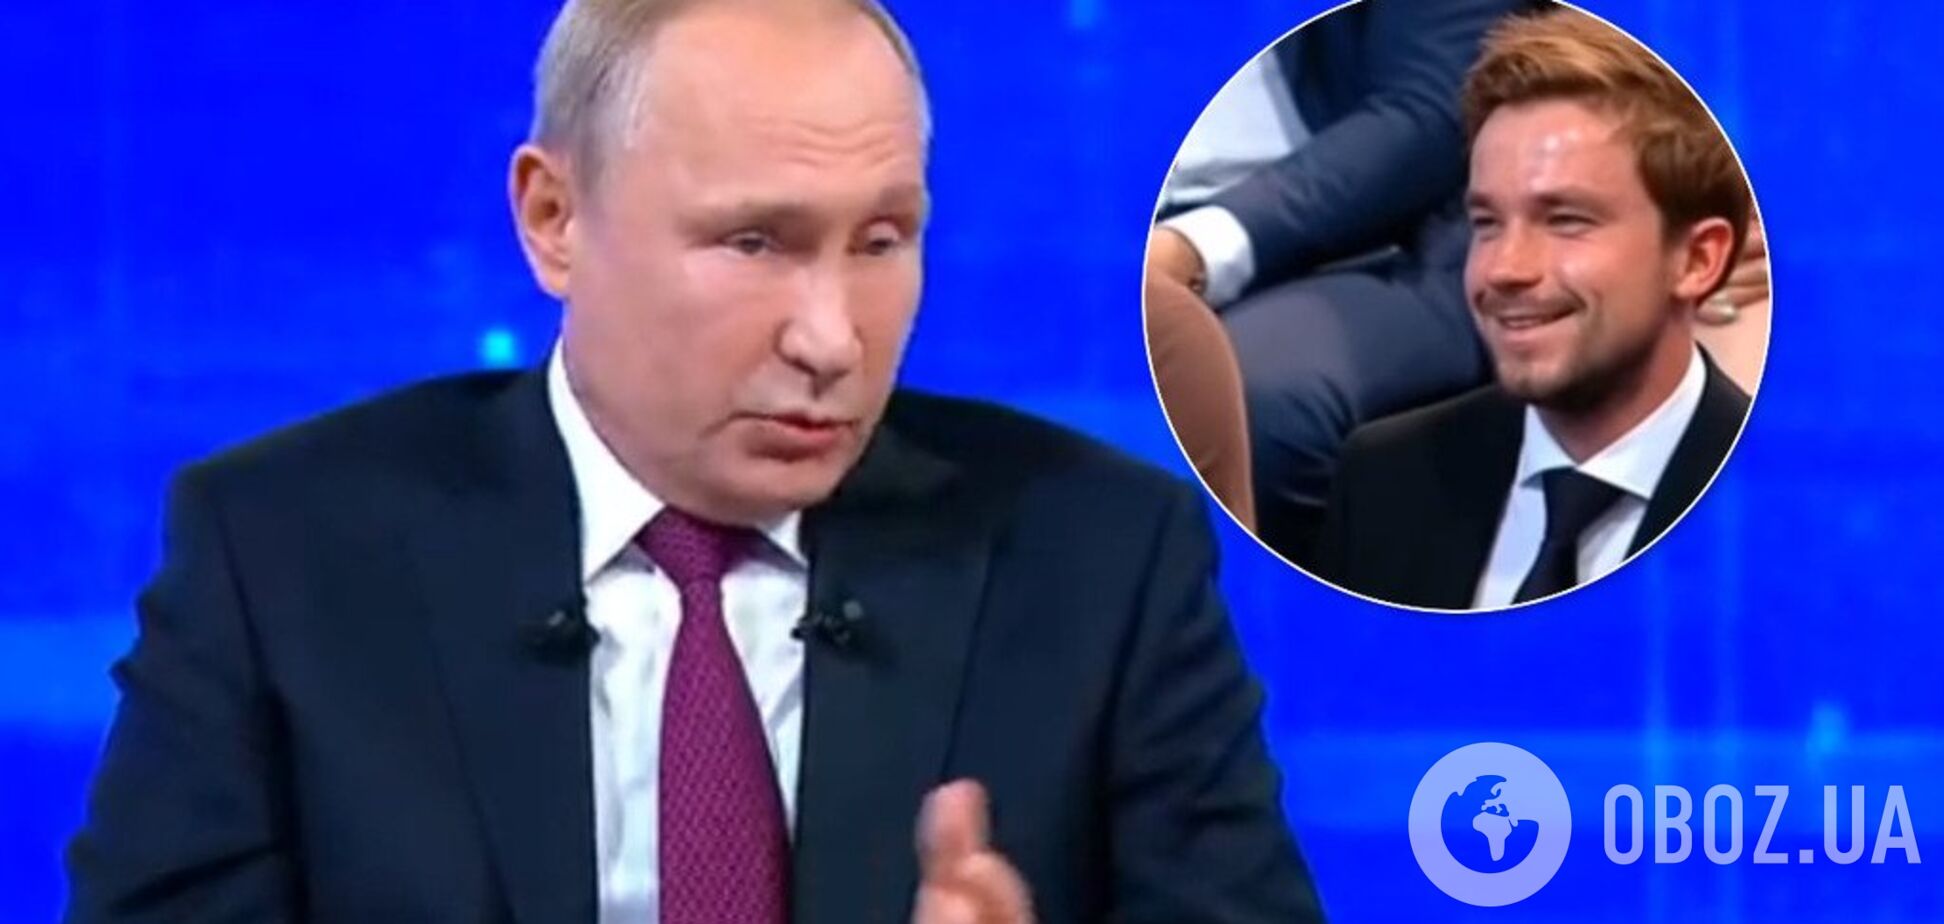 'Держится из последних сил?' Известный актер озадачил сеть поведением на 'Прямой линии' с Путиным